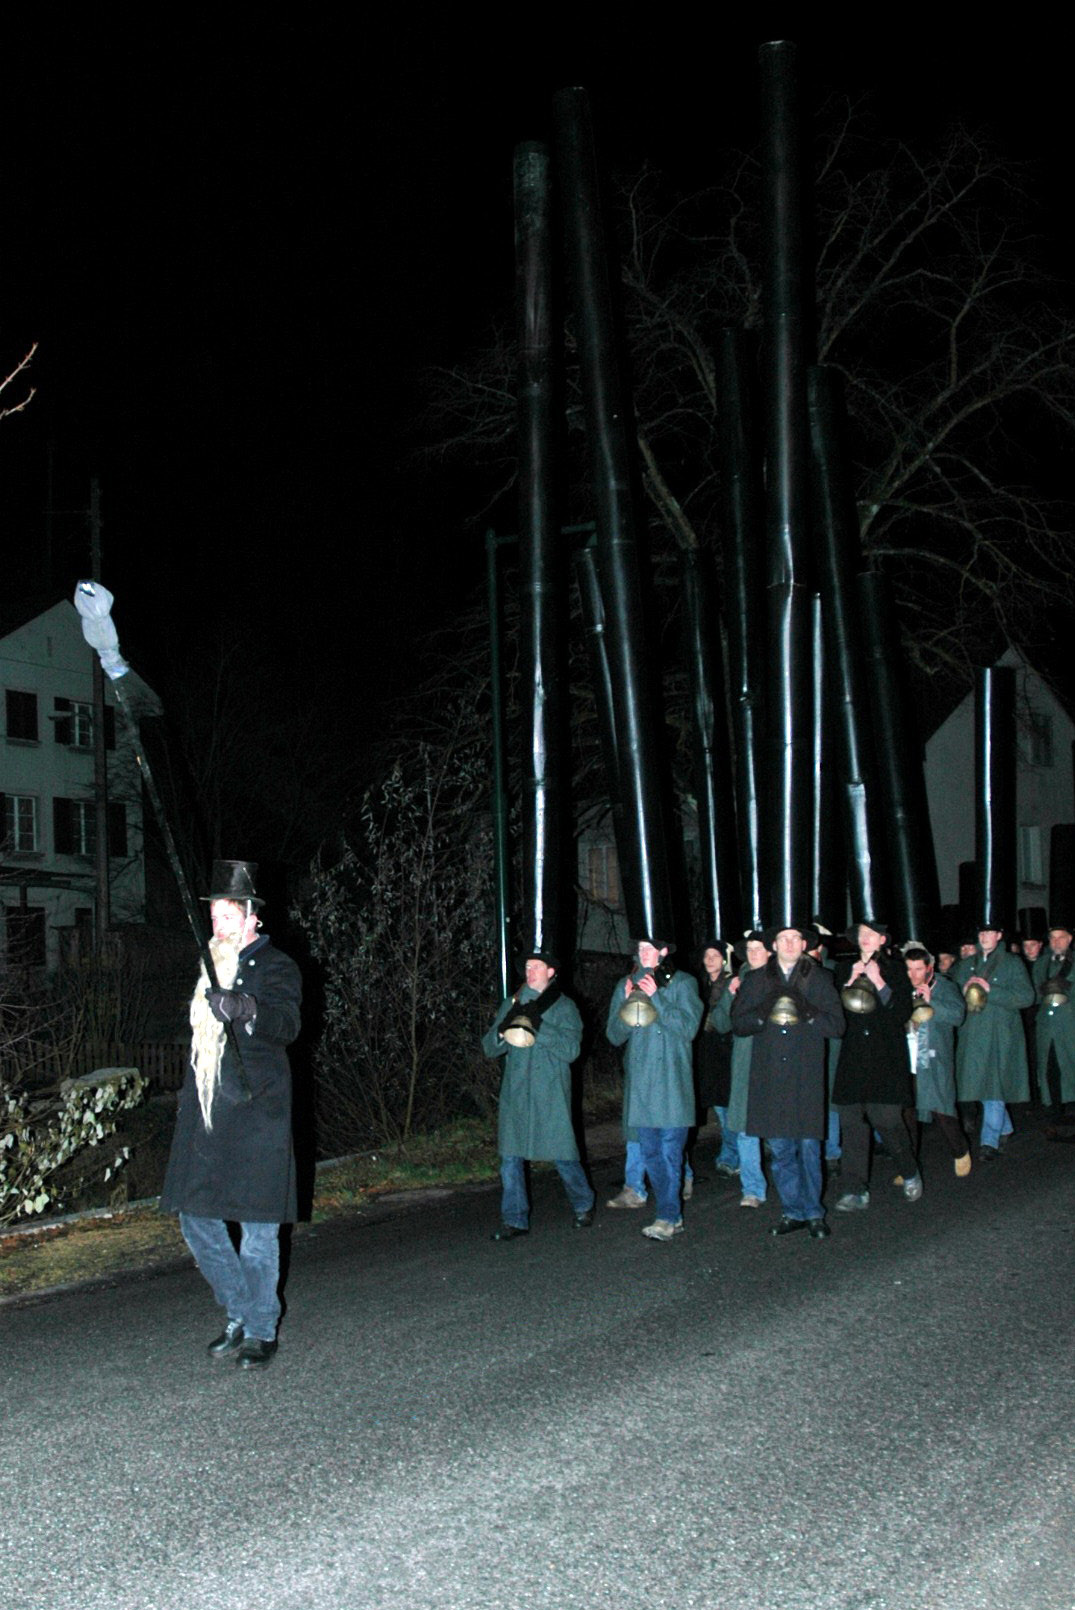 Die Männer gehen schweigend, zum Takt ihrer Schritte erklingen umgehängte Glocken, 2004 © Beat Thommen